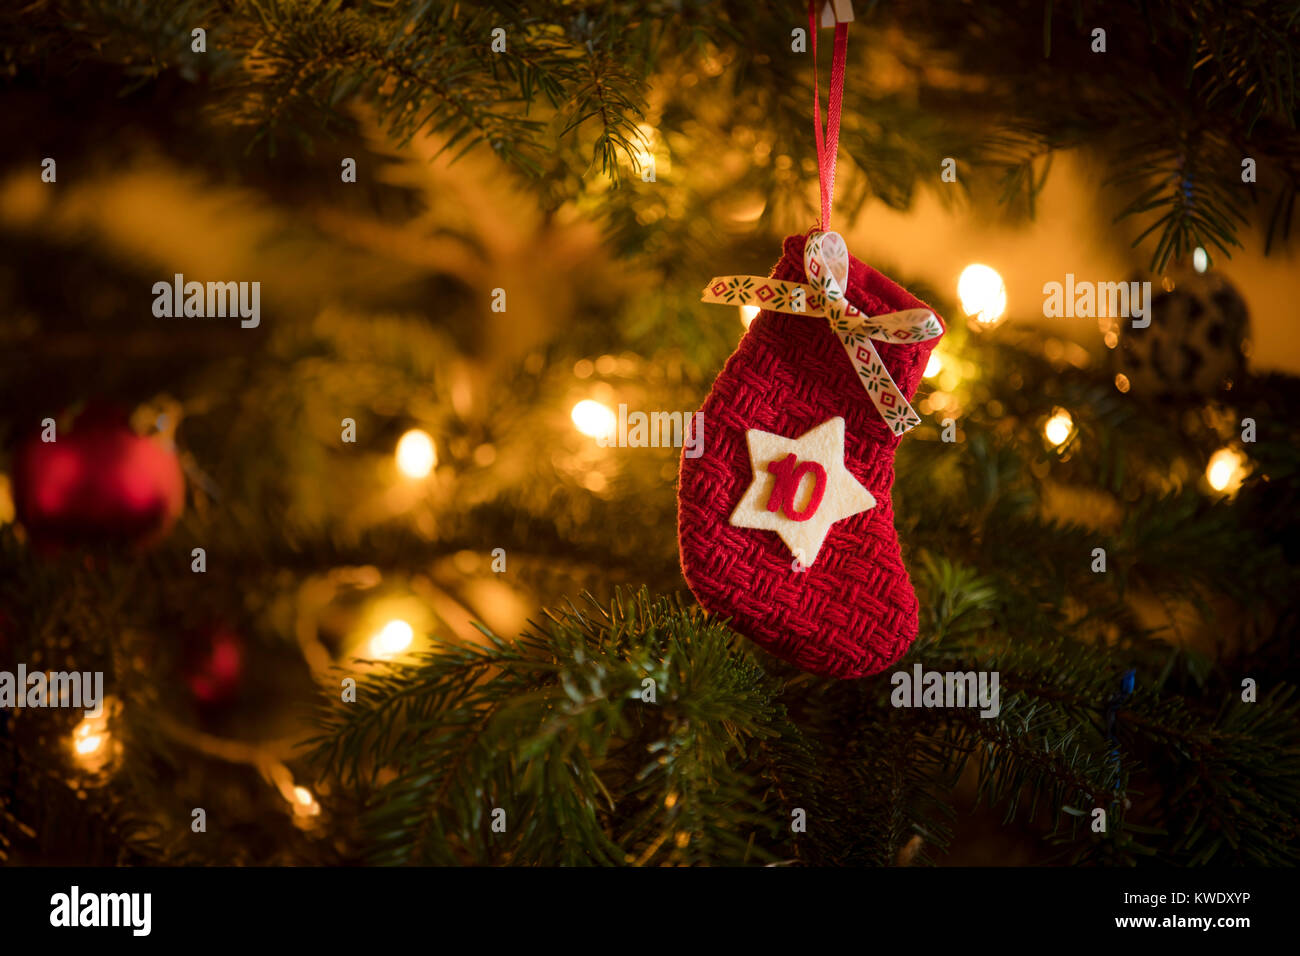 La Data Del Natale.Tradizionale Calendario D Avvento Calza Con La Data Del 10 Dicembre Appeso Su Un Tradizionale Albero Di Natale Foto Stock Alamy